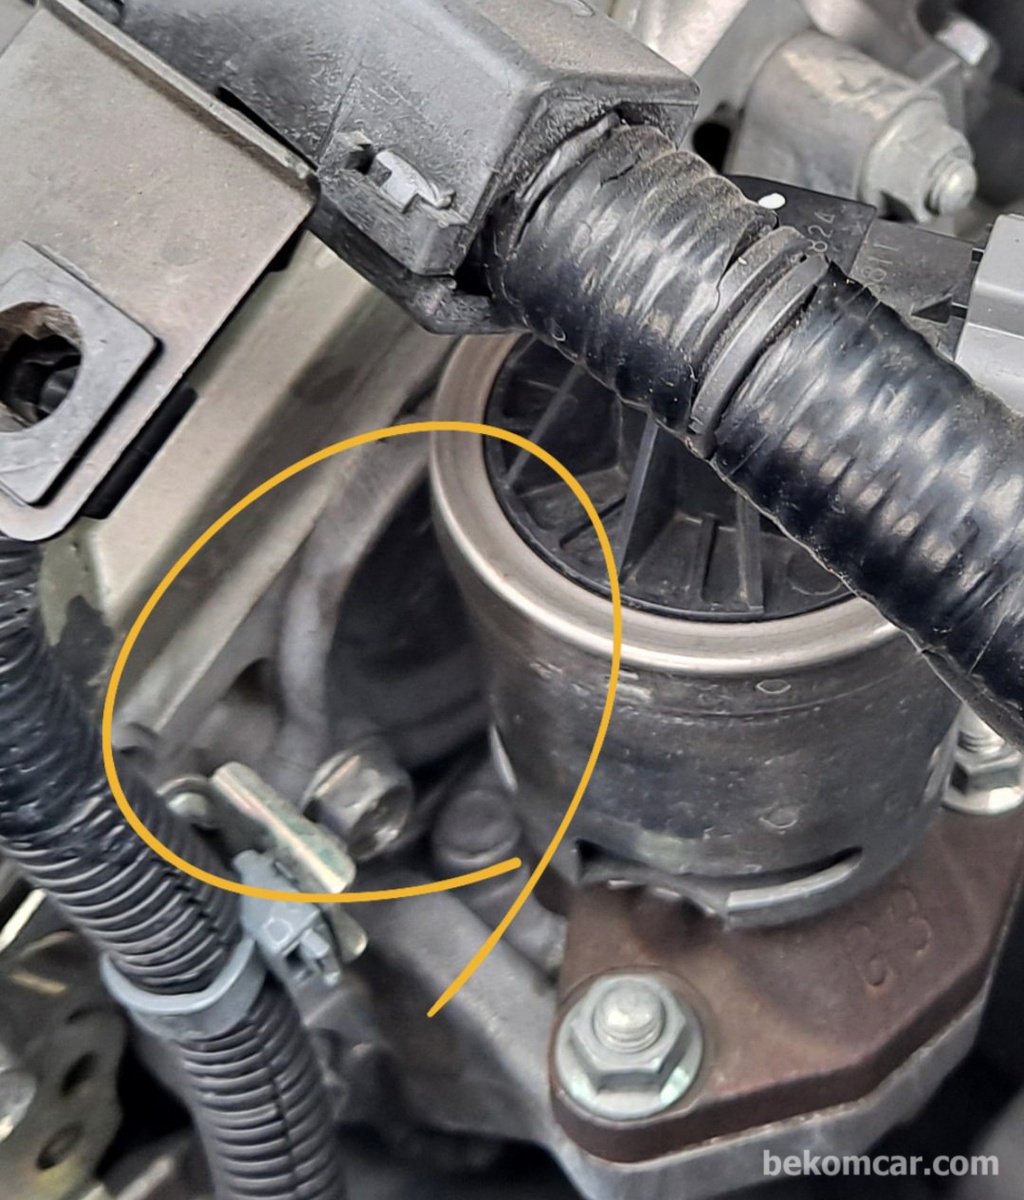 Used car inspection of Honda camshaft seal oil leak|bekomcar.com